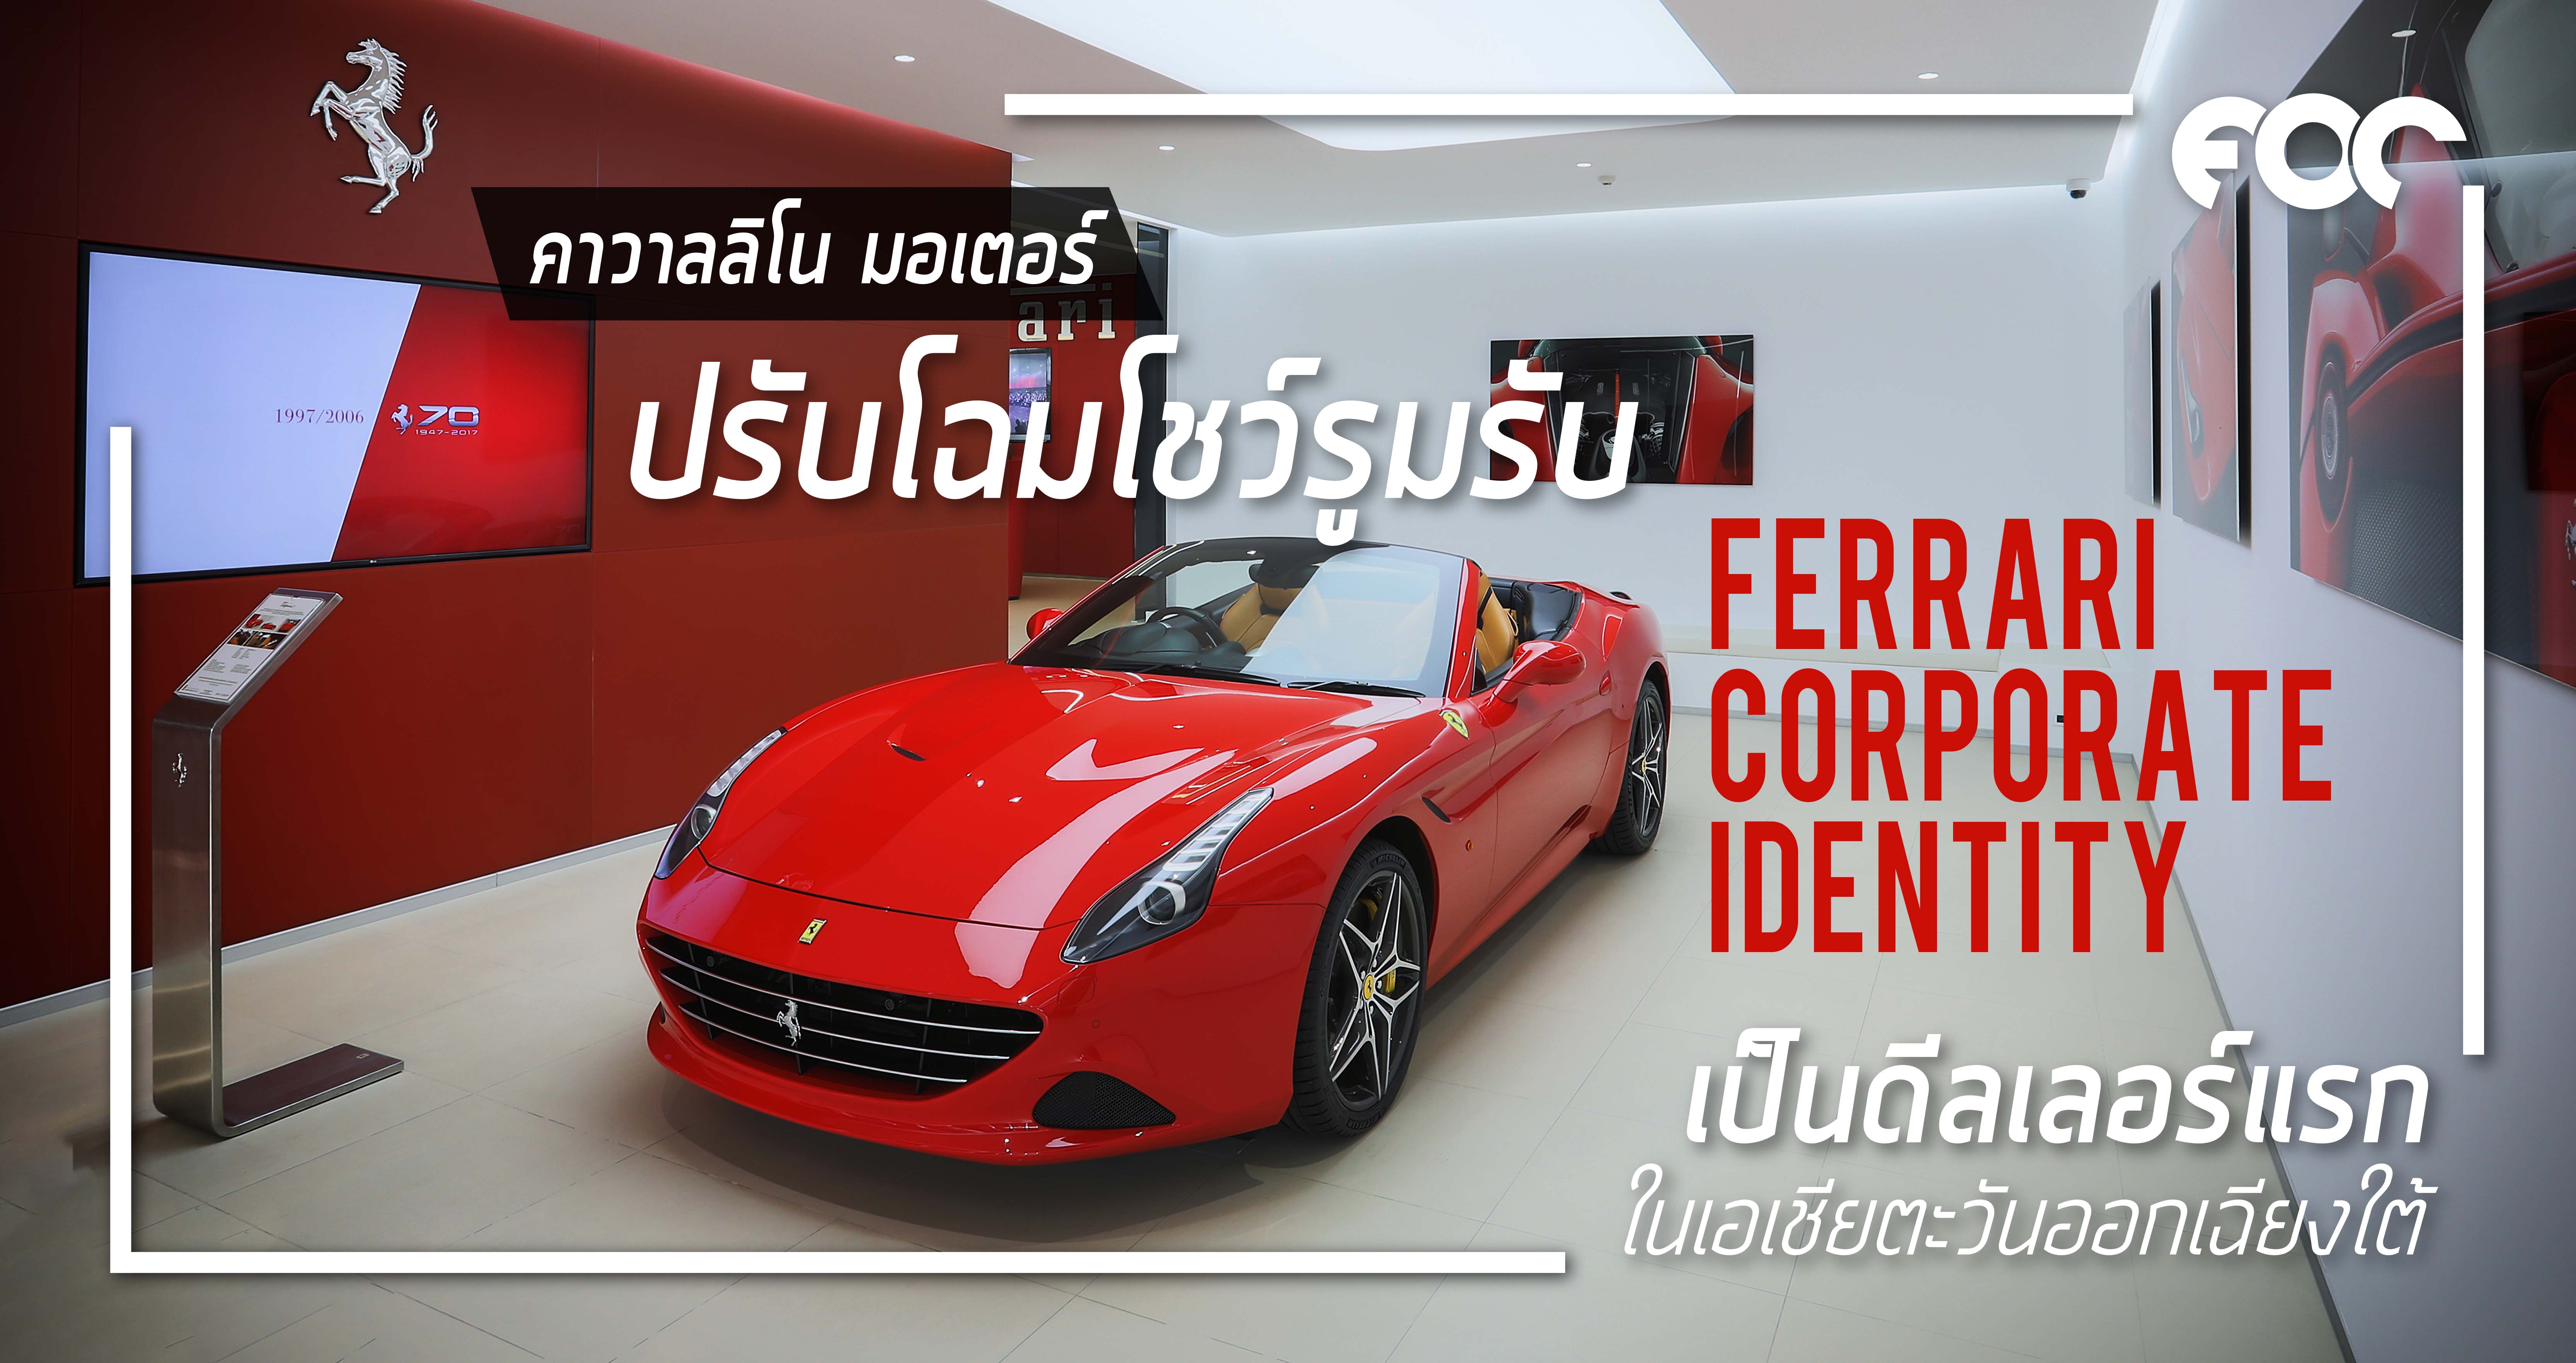 คาวาลลิโน มอเตอร์ปรับโฉมโชว์รูมครั้งใหญ่ในรอบ 10 ปี  เป็นเฟอร์รารี่ดีลเลอร์แรกในเอเชียตะวันออกฉียงใต้ สอดรับกับ Ferrari Corporate Identity